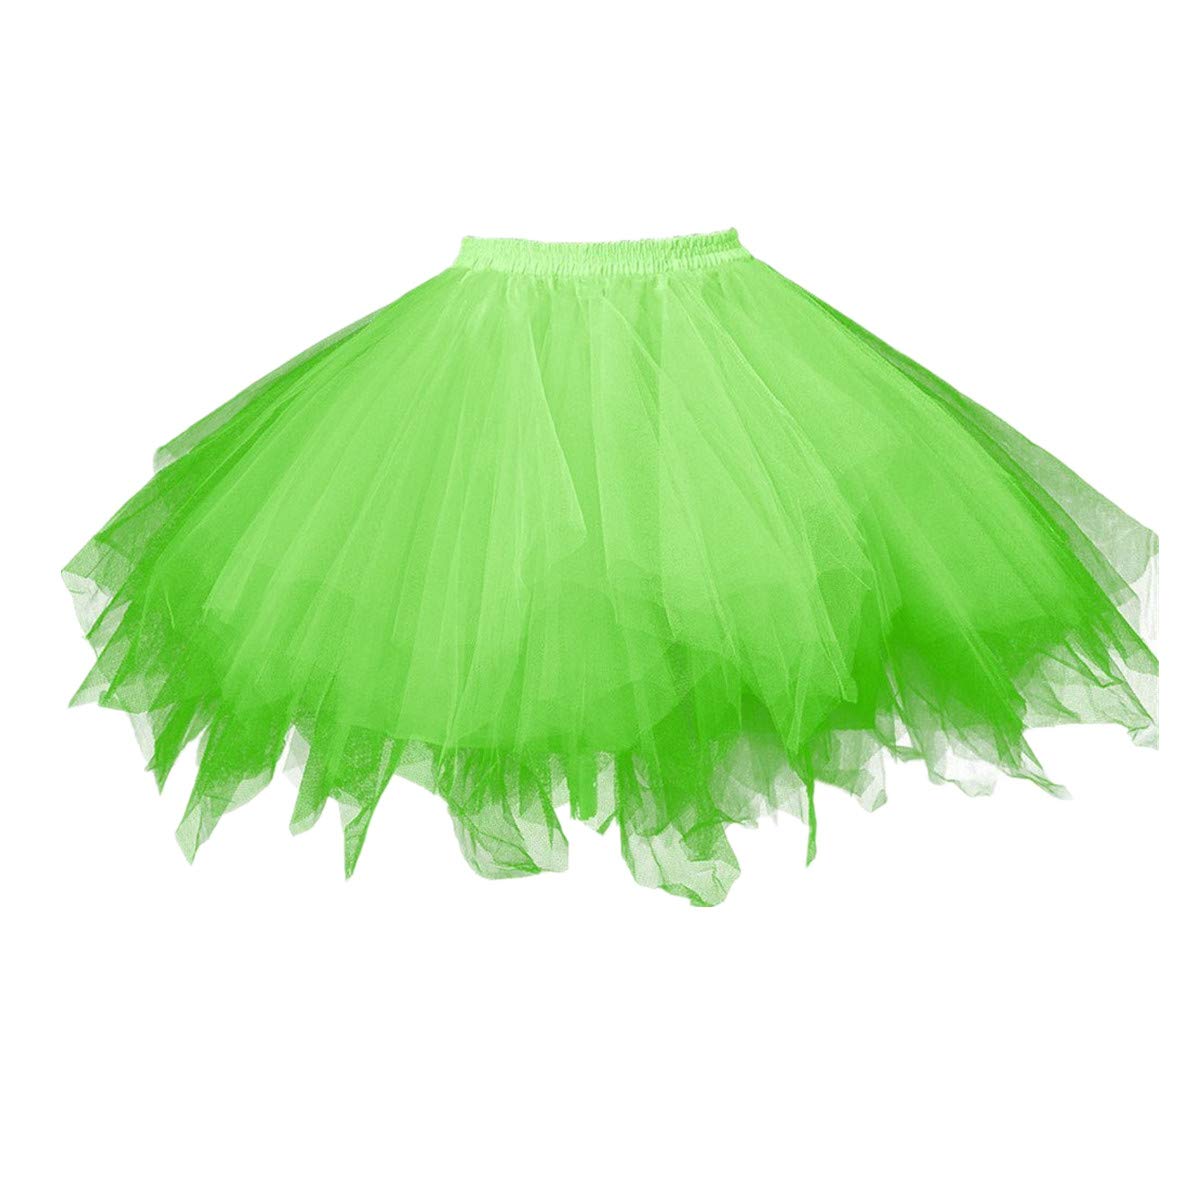 Karneval Erwachsene Damen 80's übergröße Tüllrock Tütü Röcke Tüll Petticoat Tutu Grün